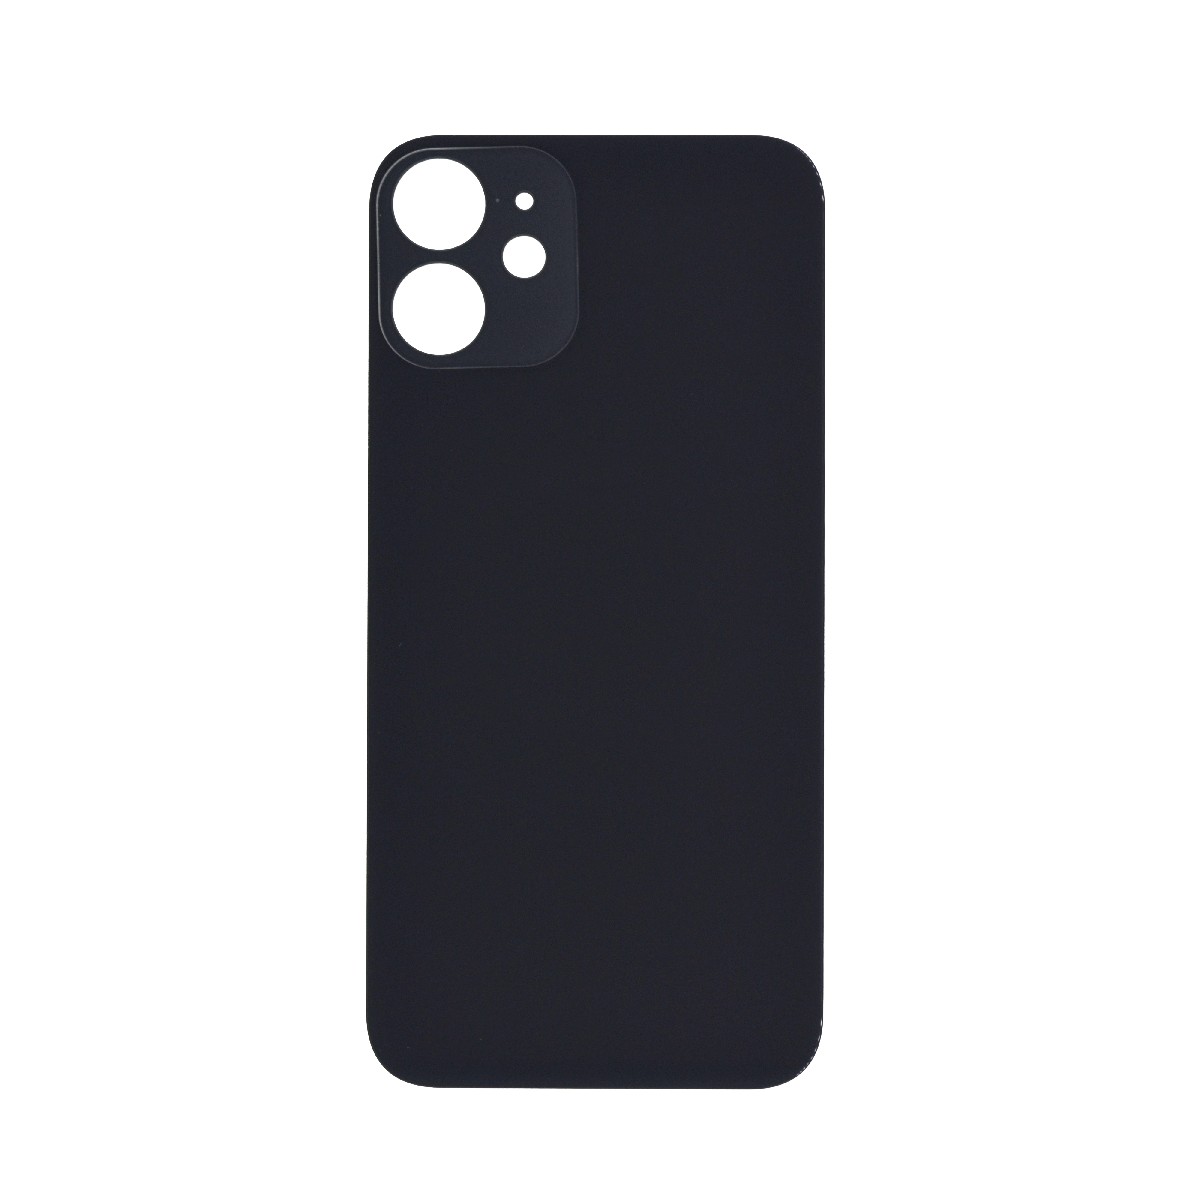 Πίσω Κάλυμμα για Apple iPhone 12 Mini Μαύρο OEM Type A χωρίς Τζαμάκι Κάμερας